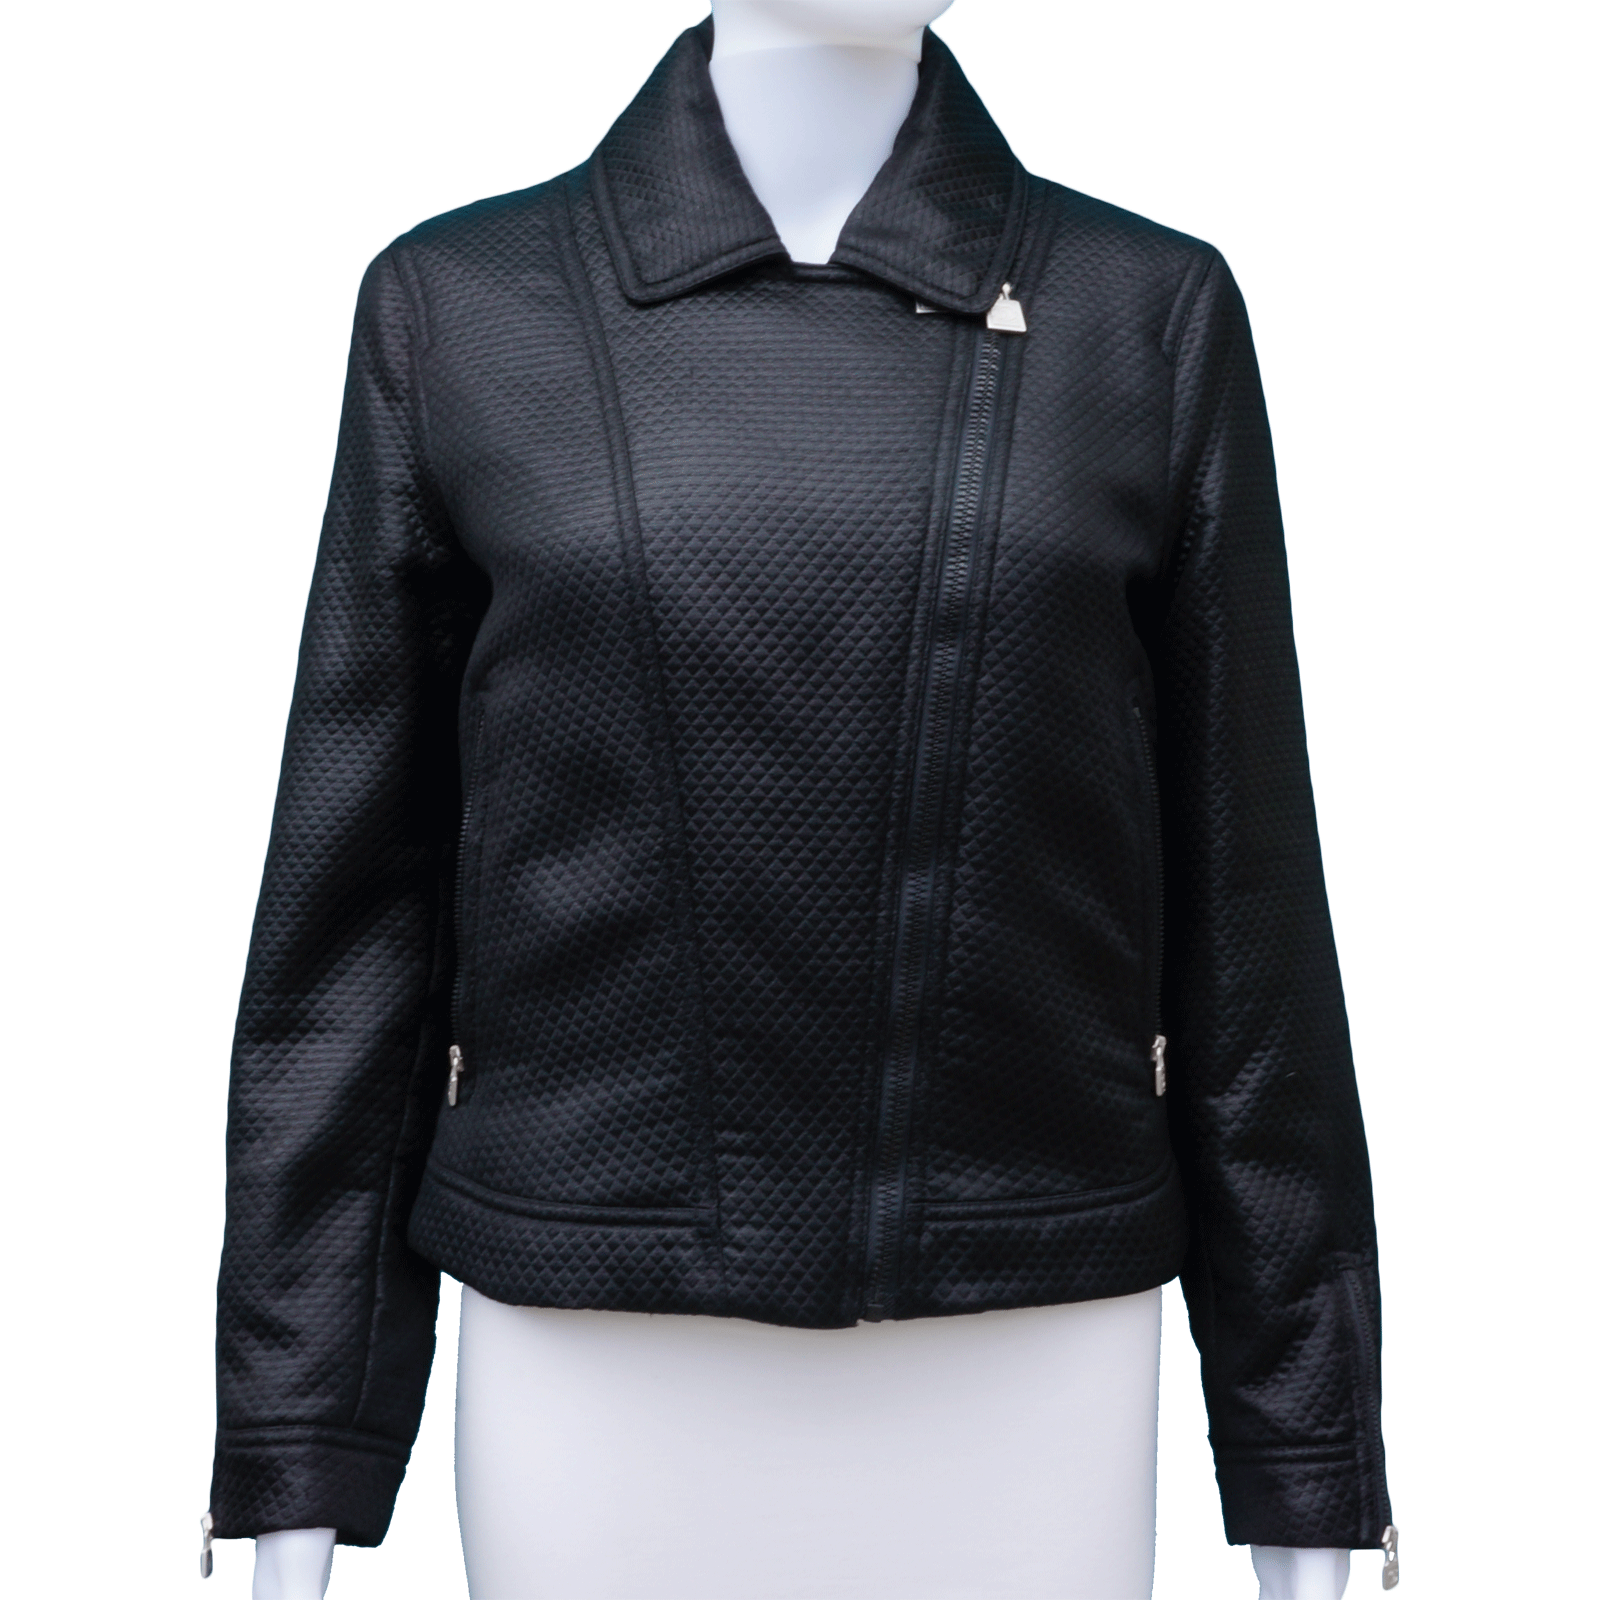 LYUU Chanel Leather Jacket